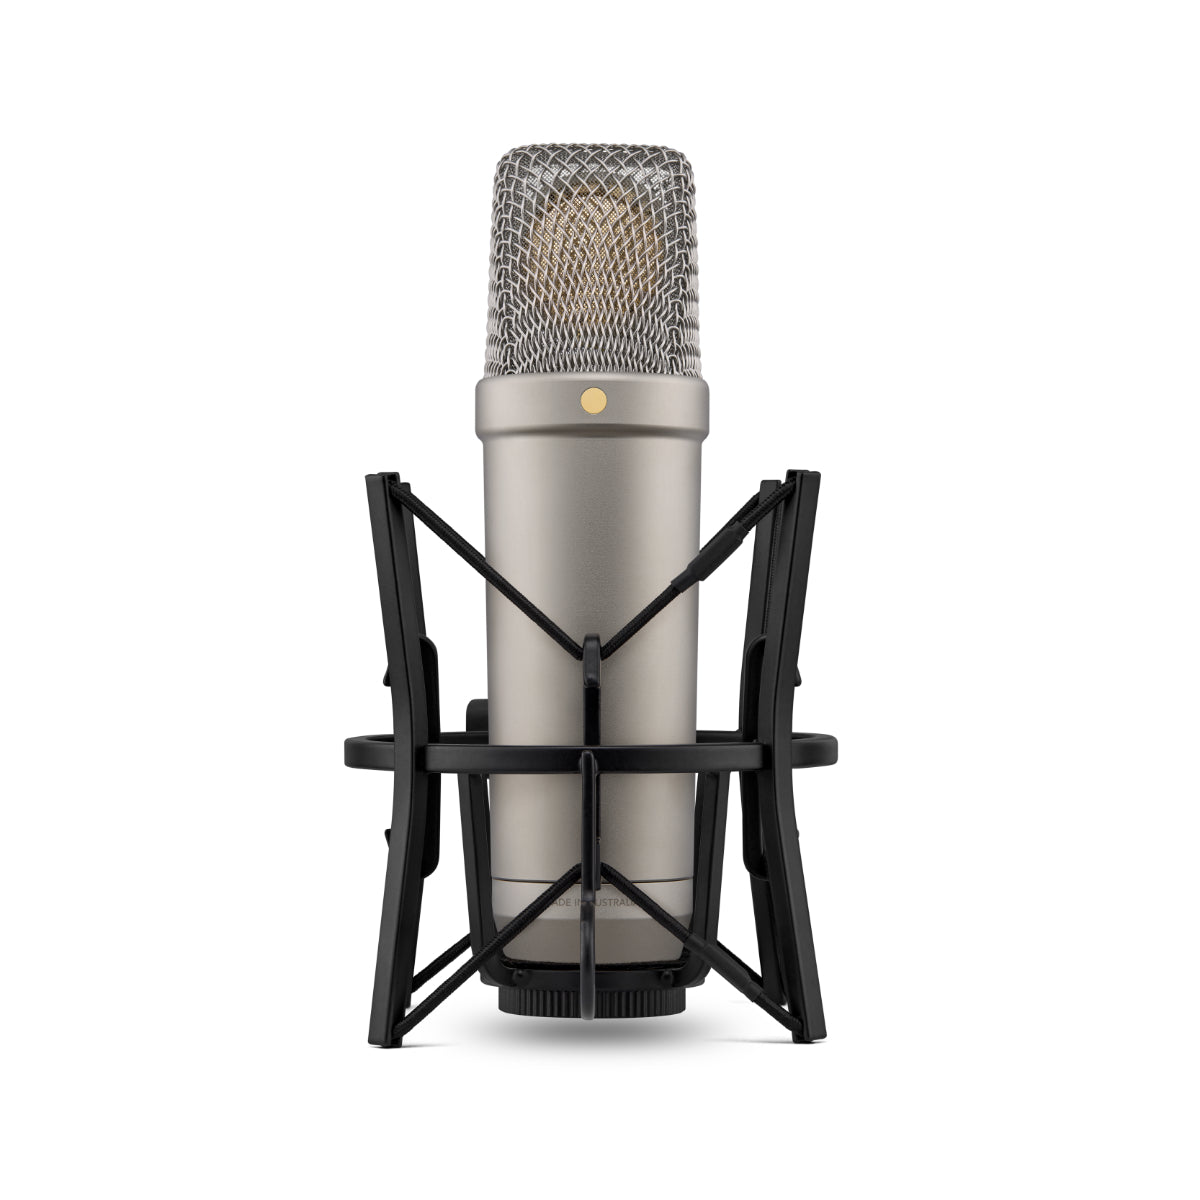 Rode NT1 Gen 5 Studio Cardioid Condenser Microphone Package